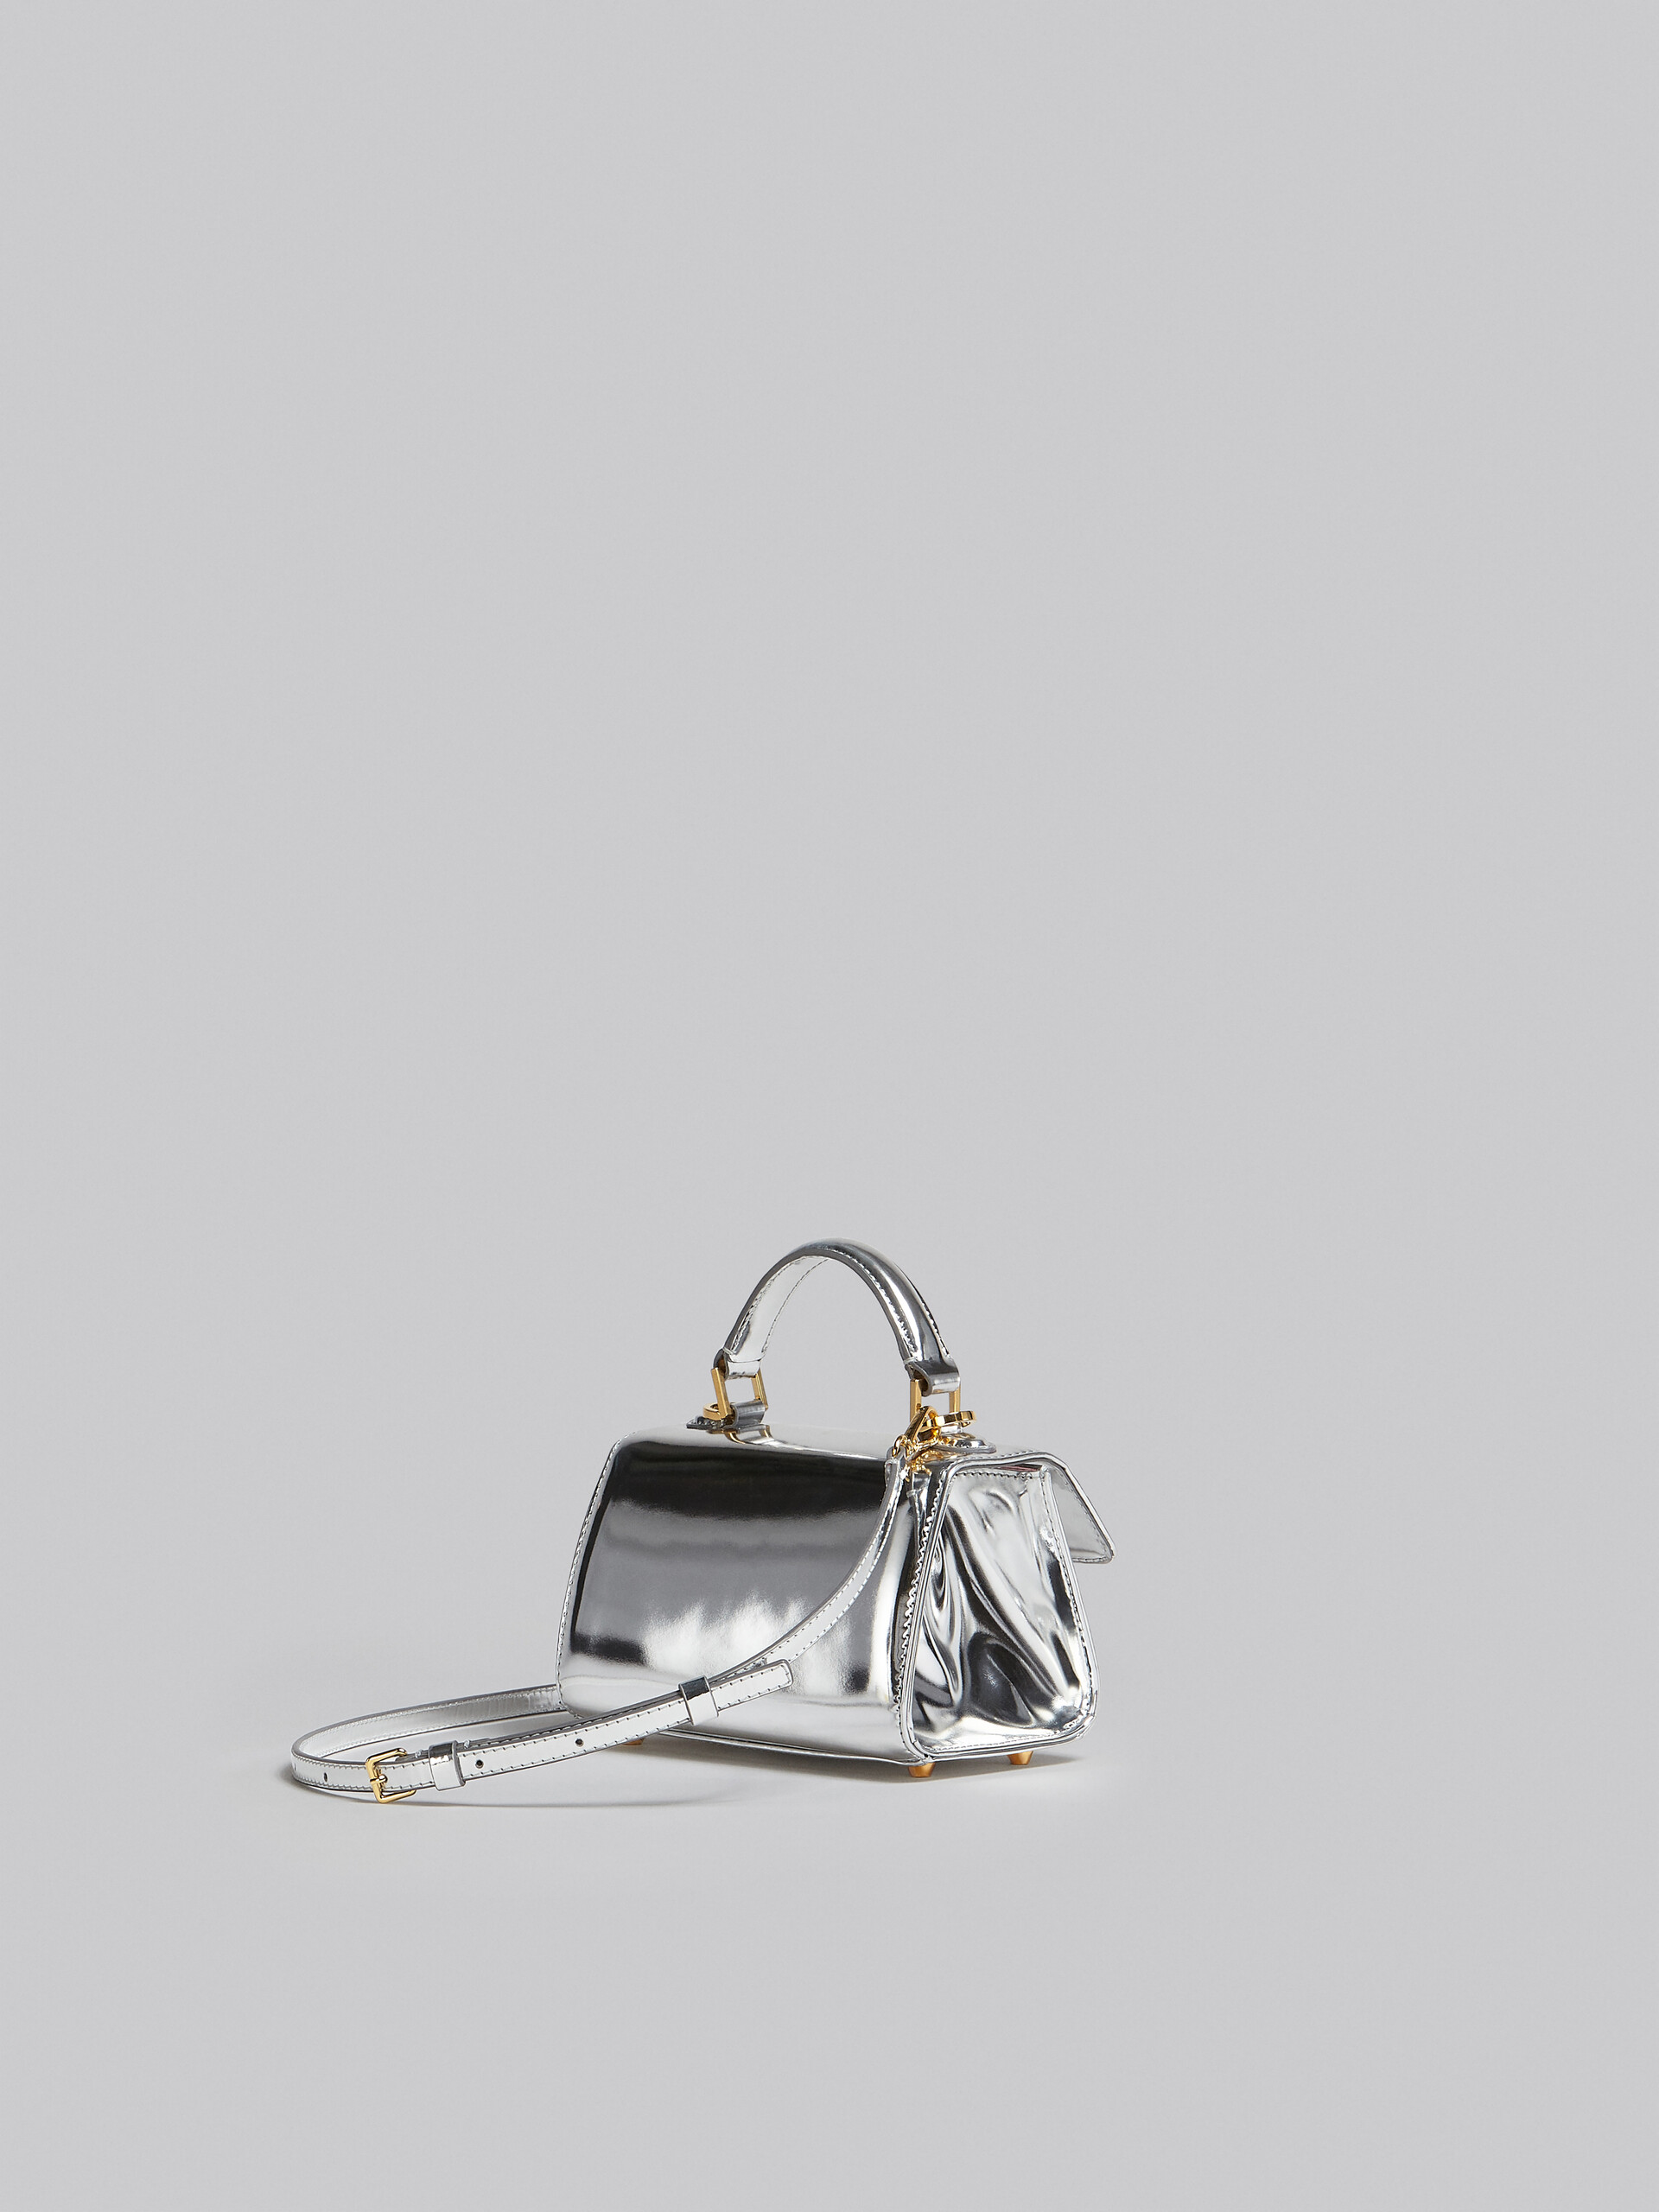 Relativity Bag Mini in pelle specchiata argento - Borse a mano - Image 3